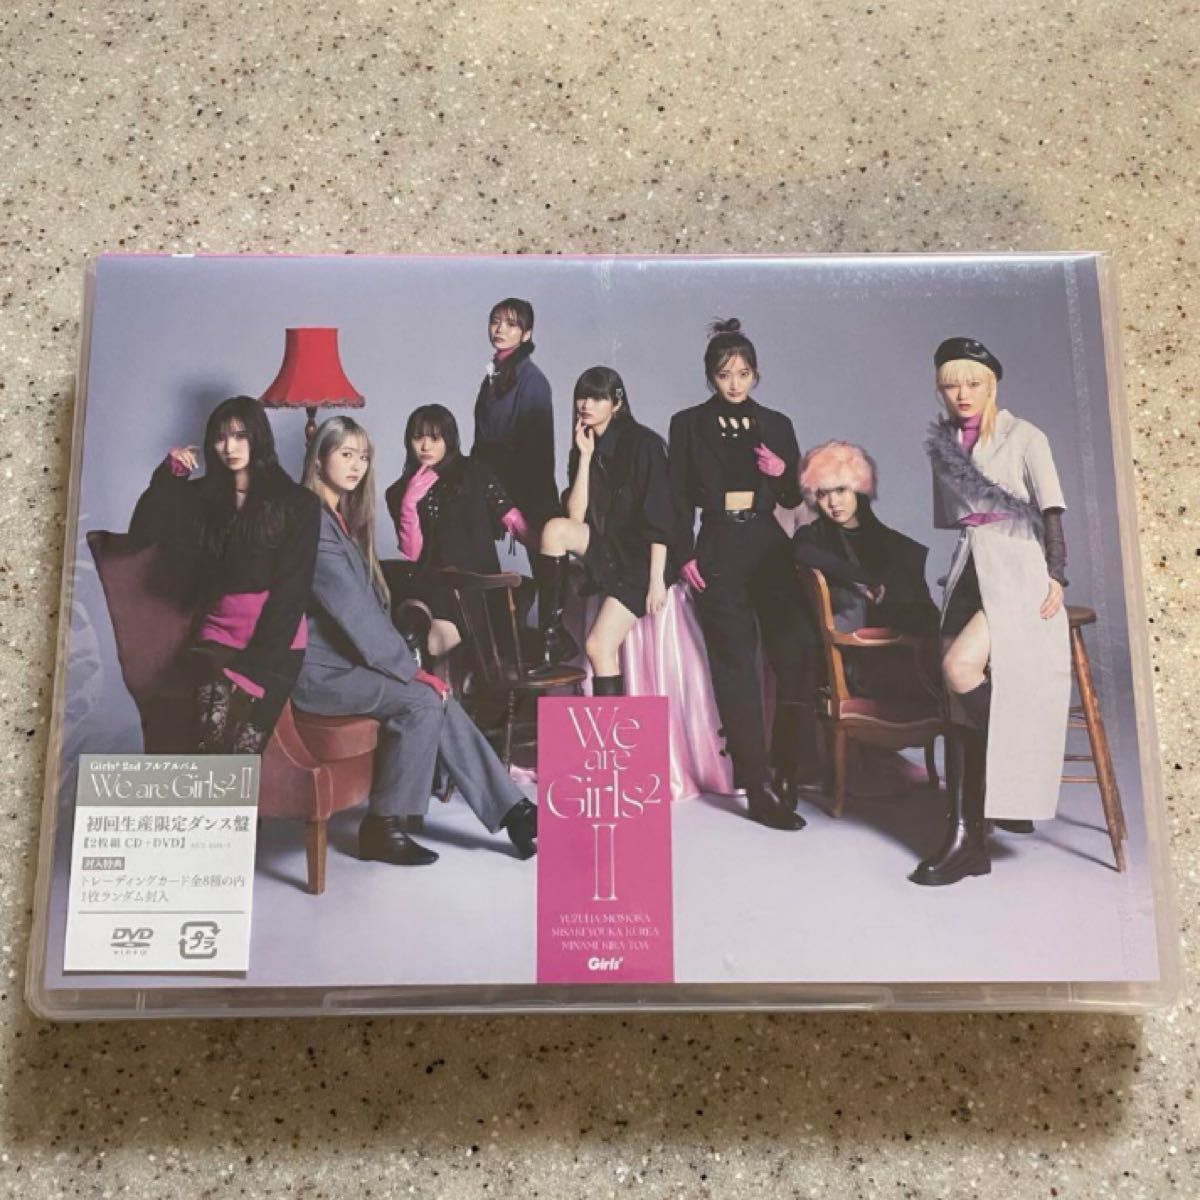 CD Girls2/We are Girls2 -II- 初回限定ダンス盤 (DVD付) トレーディングカード付